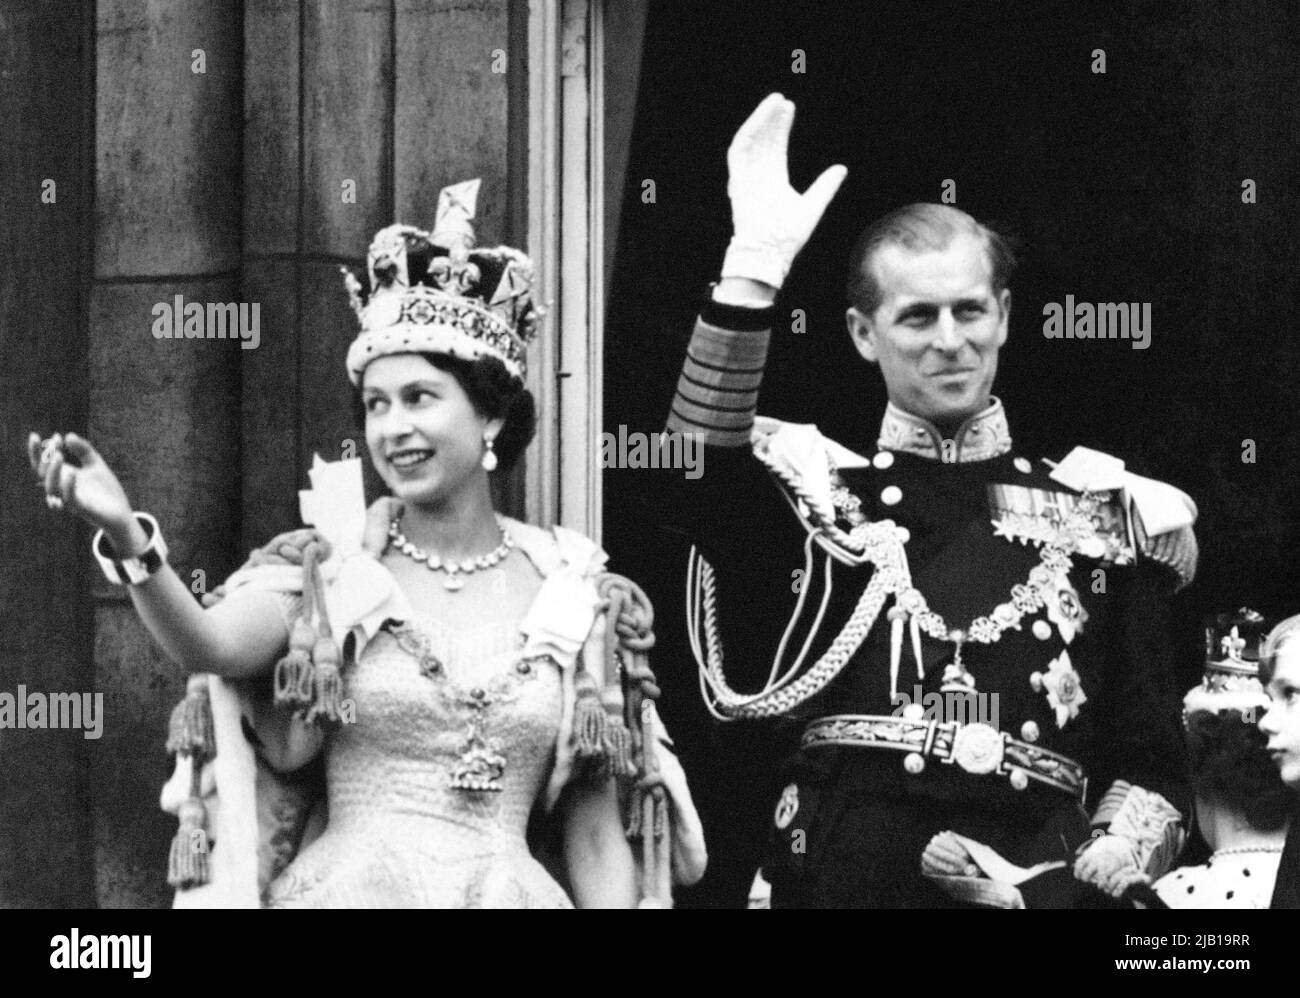 Photo du dossier datée du 2/6/1953 de la reine Elizabeth II, portant la Couronne d'État impériale, et du duc d'Édimbourg, vêtu d'un uniforme d'amiral de la flotte, ondulent du balcon aux foules qui se regardent aux portes de Buckingham Palace après le couronnement. Le début des célébrations du Jubilé de la Reine marque un anniversaire important pour le monarque - sa Journée du couronnement. Il y a soixante-neuf ans, Elizabeth II a été couronnée lors d'une cérémonie religieuse organisée sur 2 juin 1953 dans les environs historiques de l'abbaye de Westminster et célébrée avec des fêtes de rue à travers le pays. Date de publication : jeudi 2 juin, 202 Banque D'Images